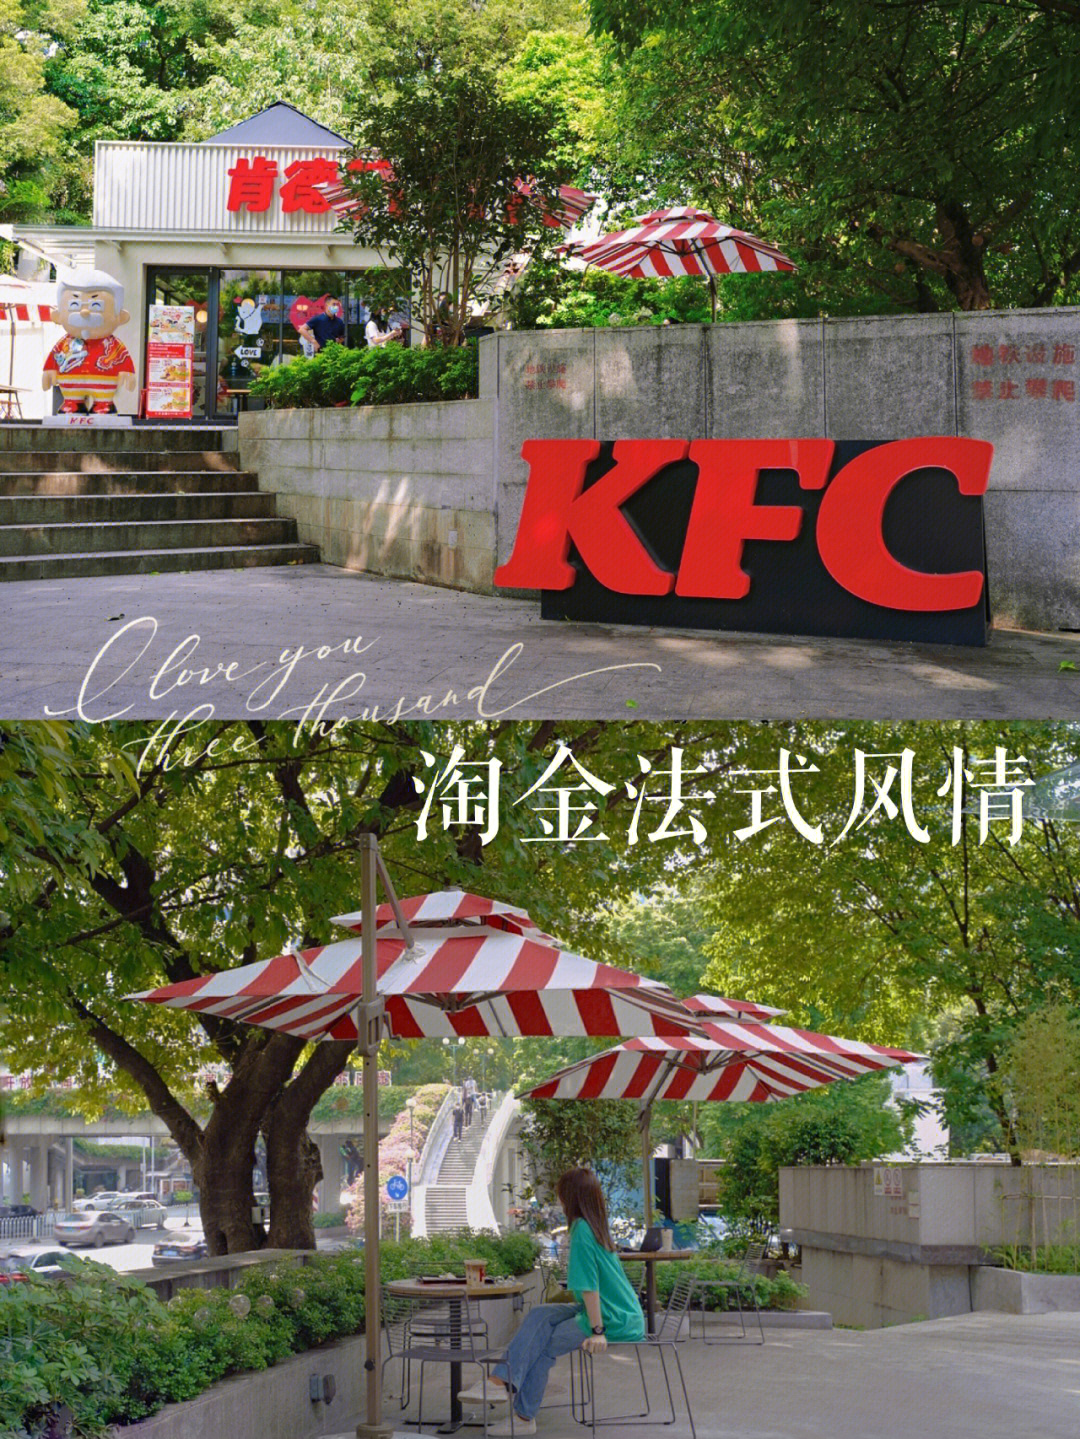 广州淘金森系浪漫花园式kfc拍照攻略